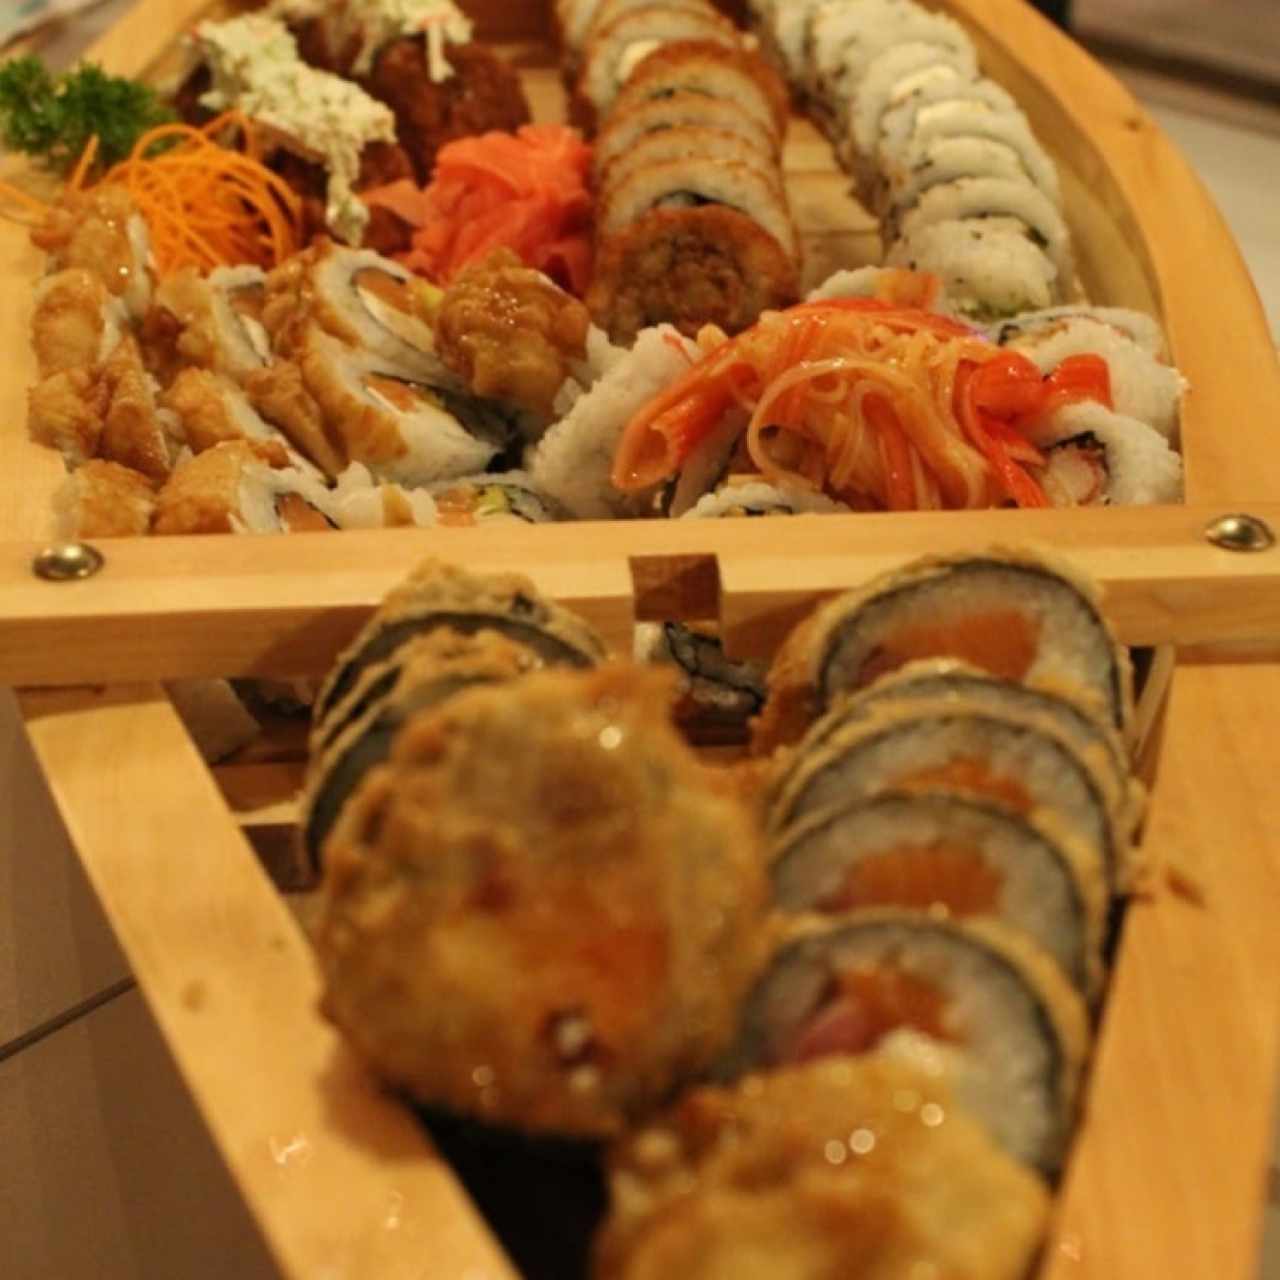 Barco de Sushi